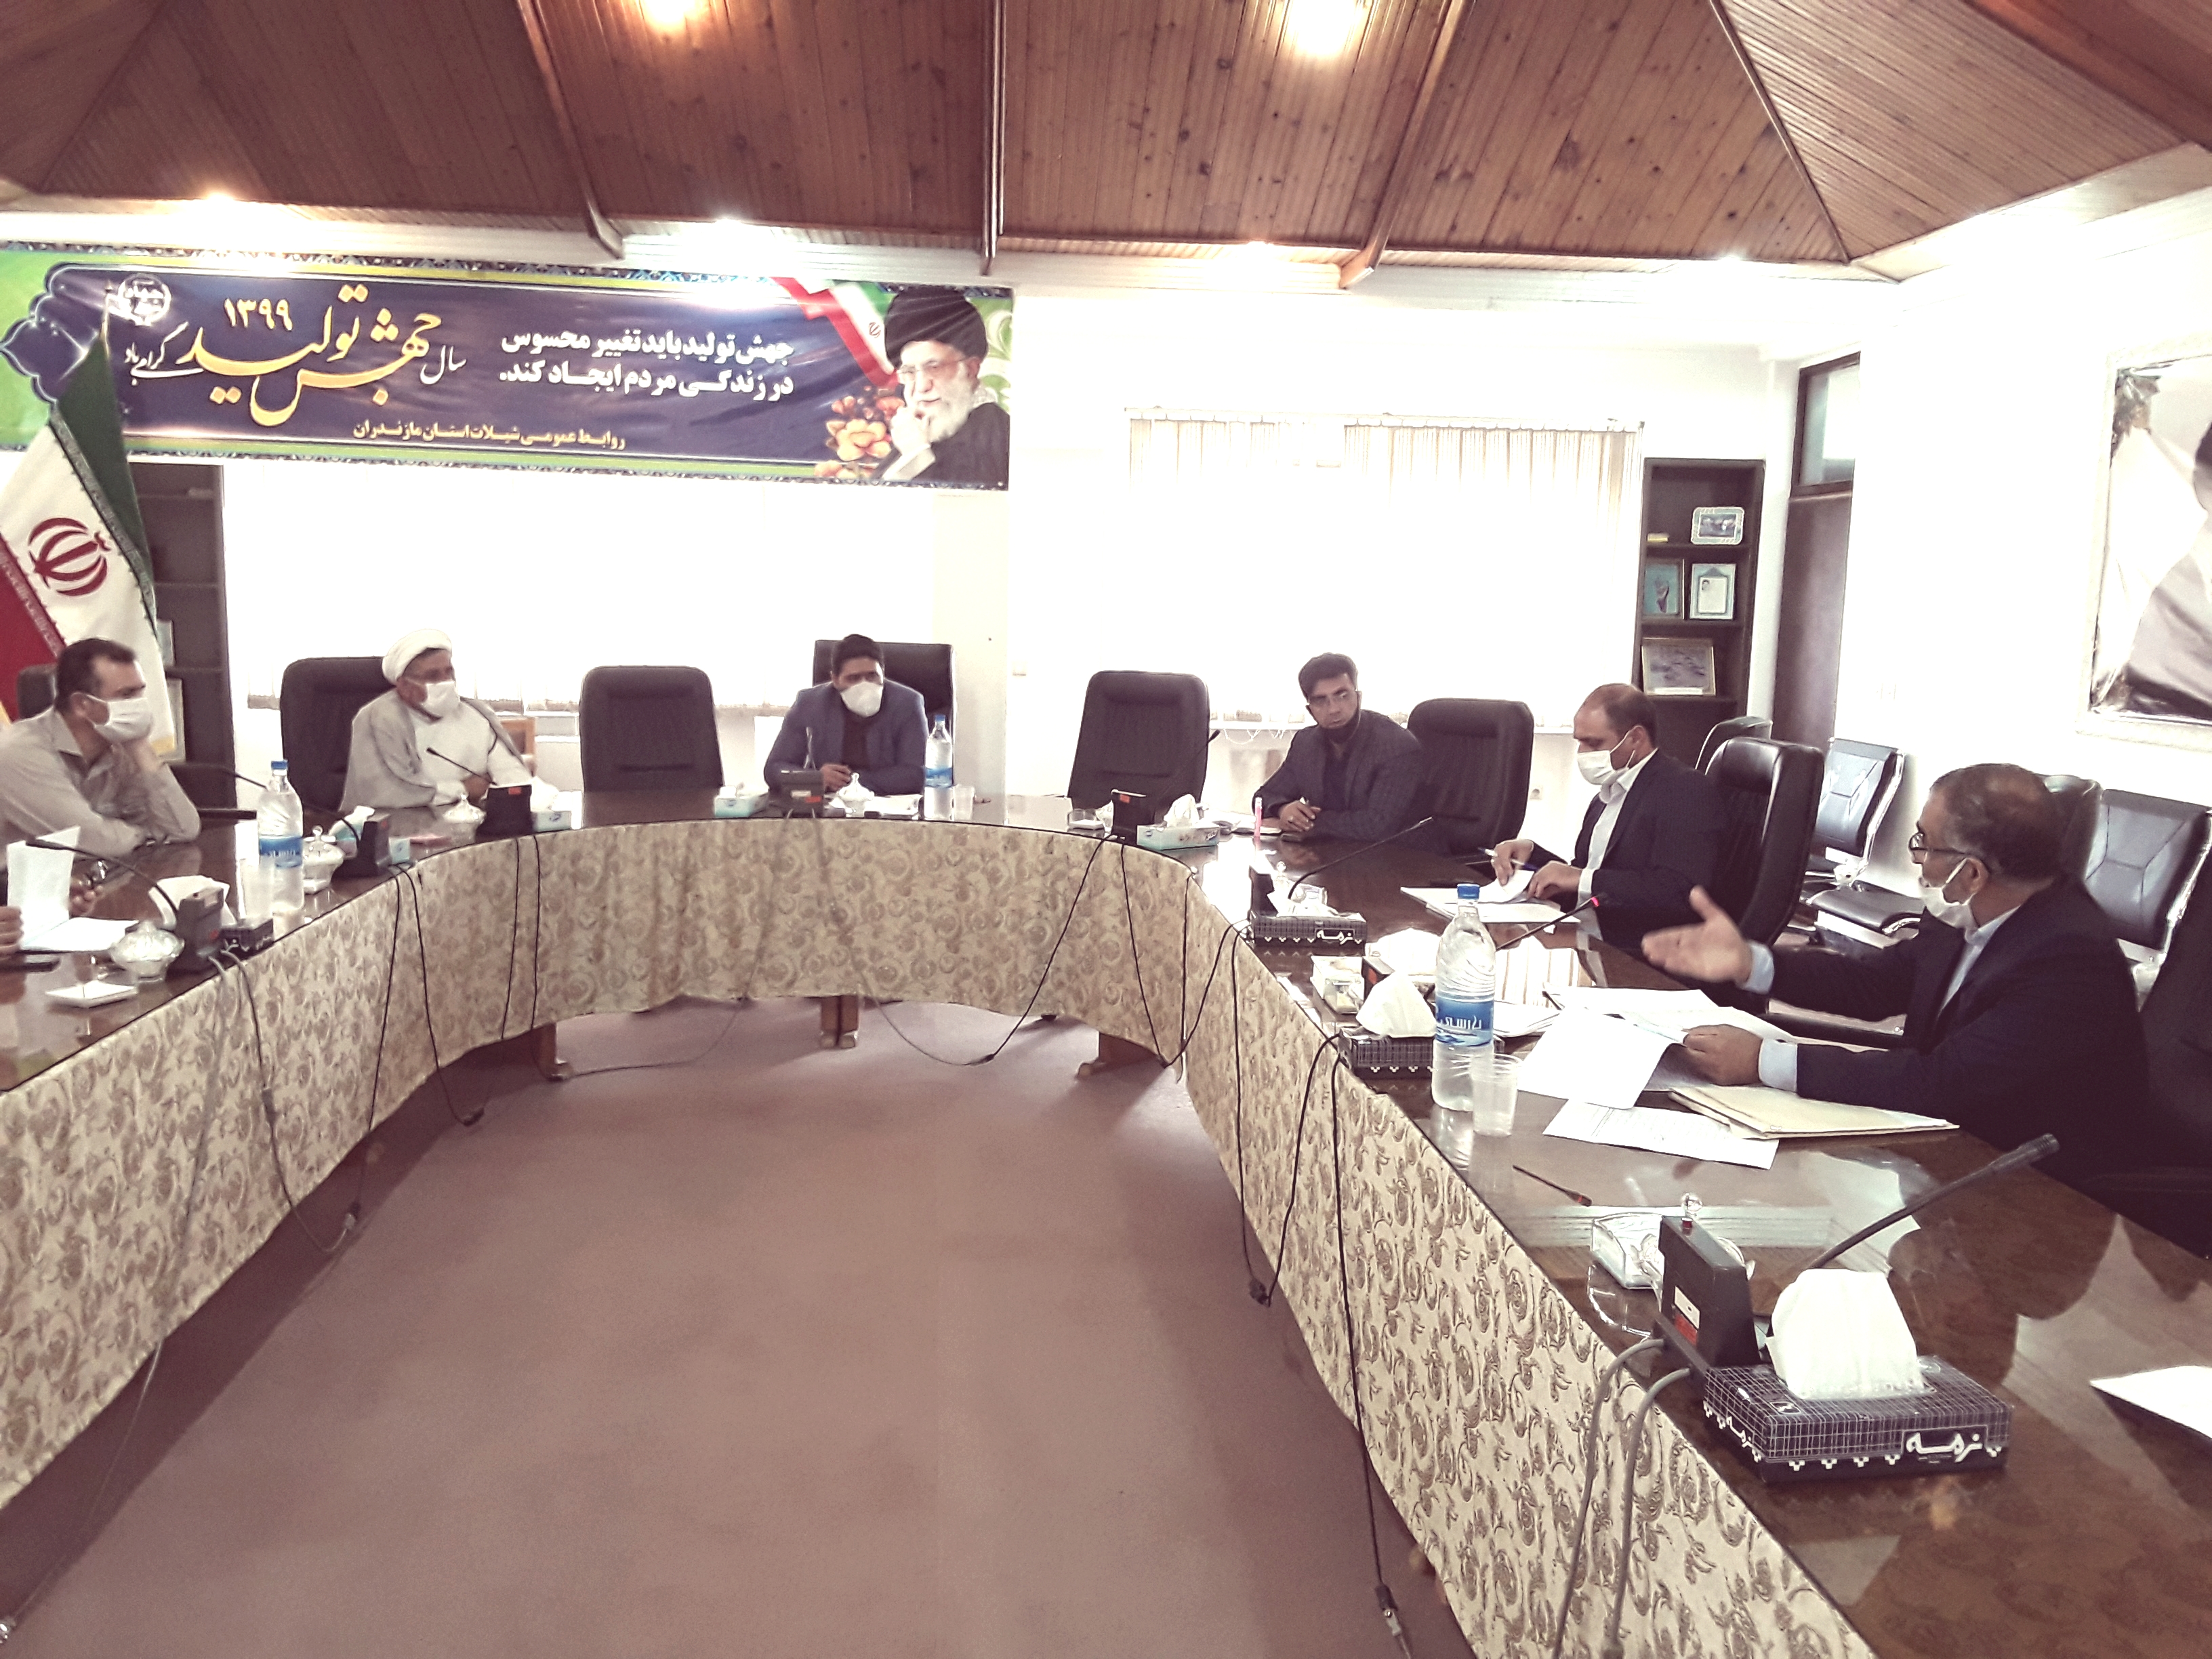 برگزاری دومین جلسه کمیته ارتقاء سلامت اداری و صیانت از حقوق شهروندی شیلات مازندران